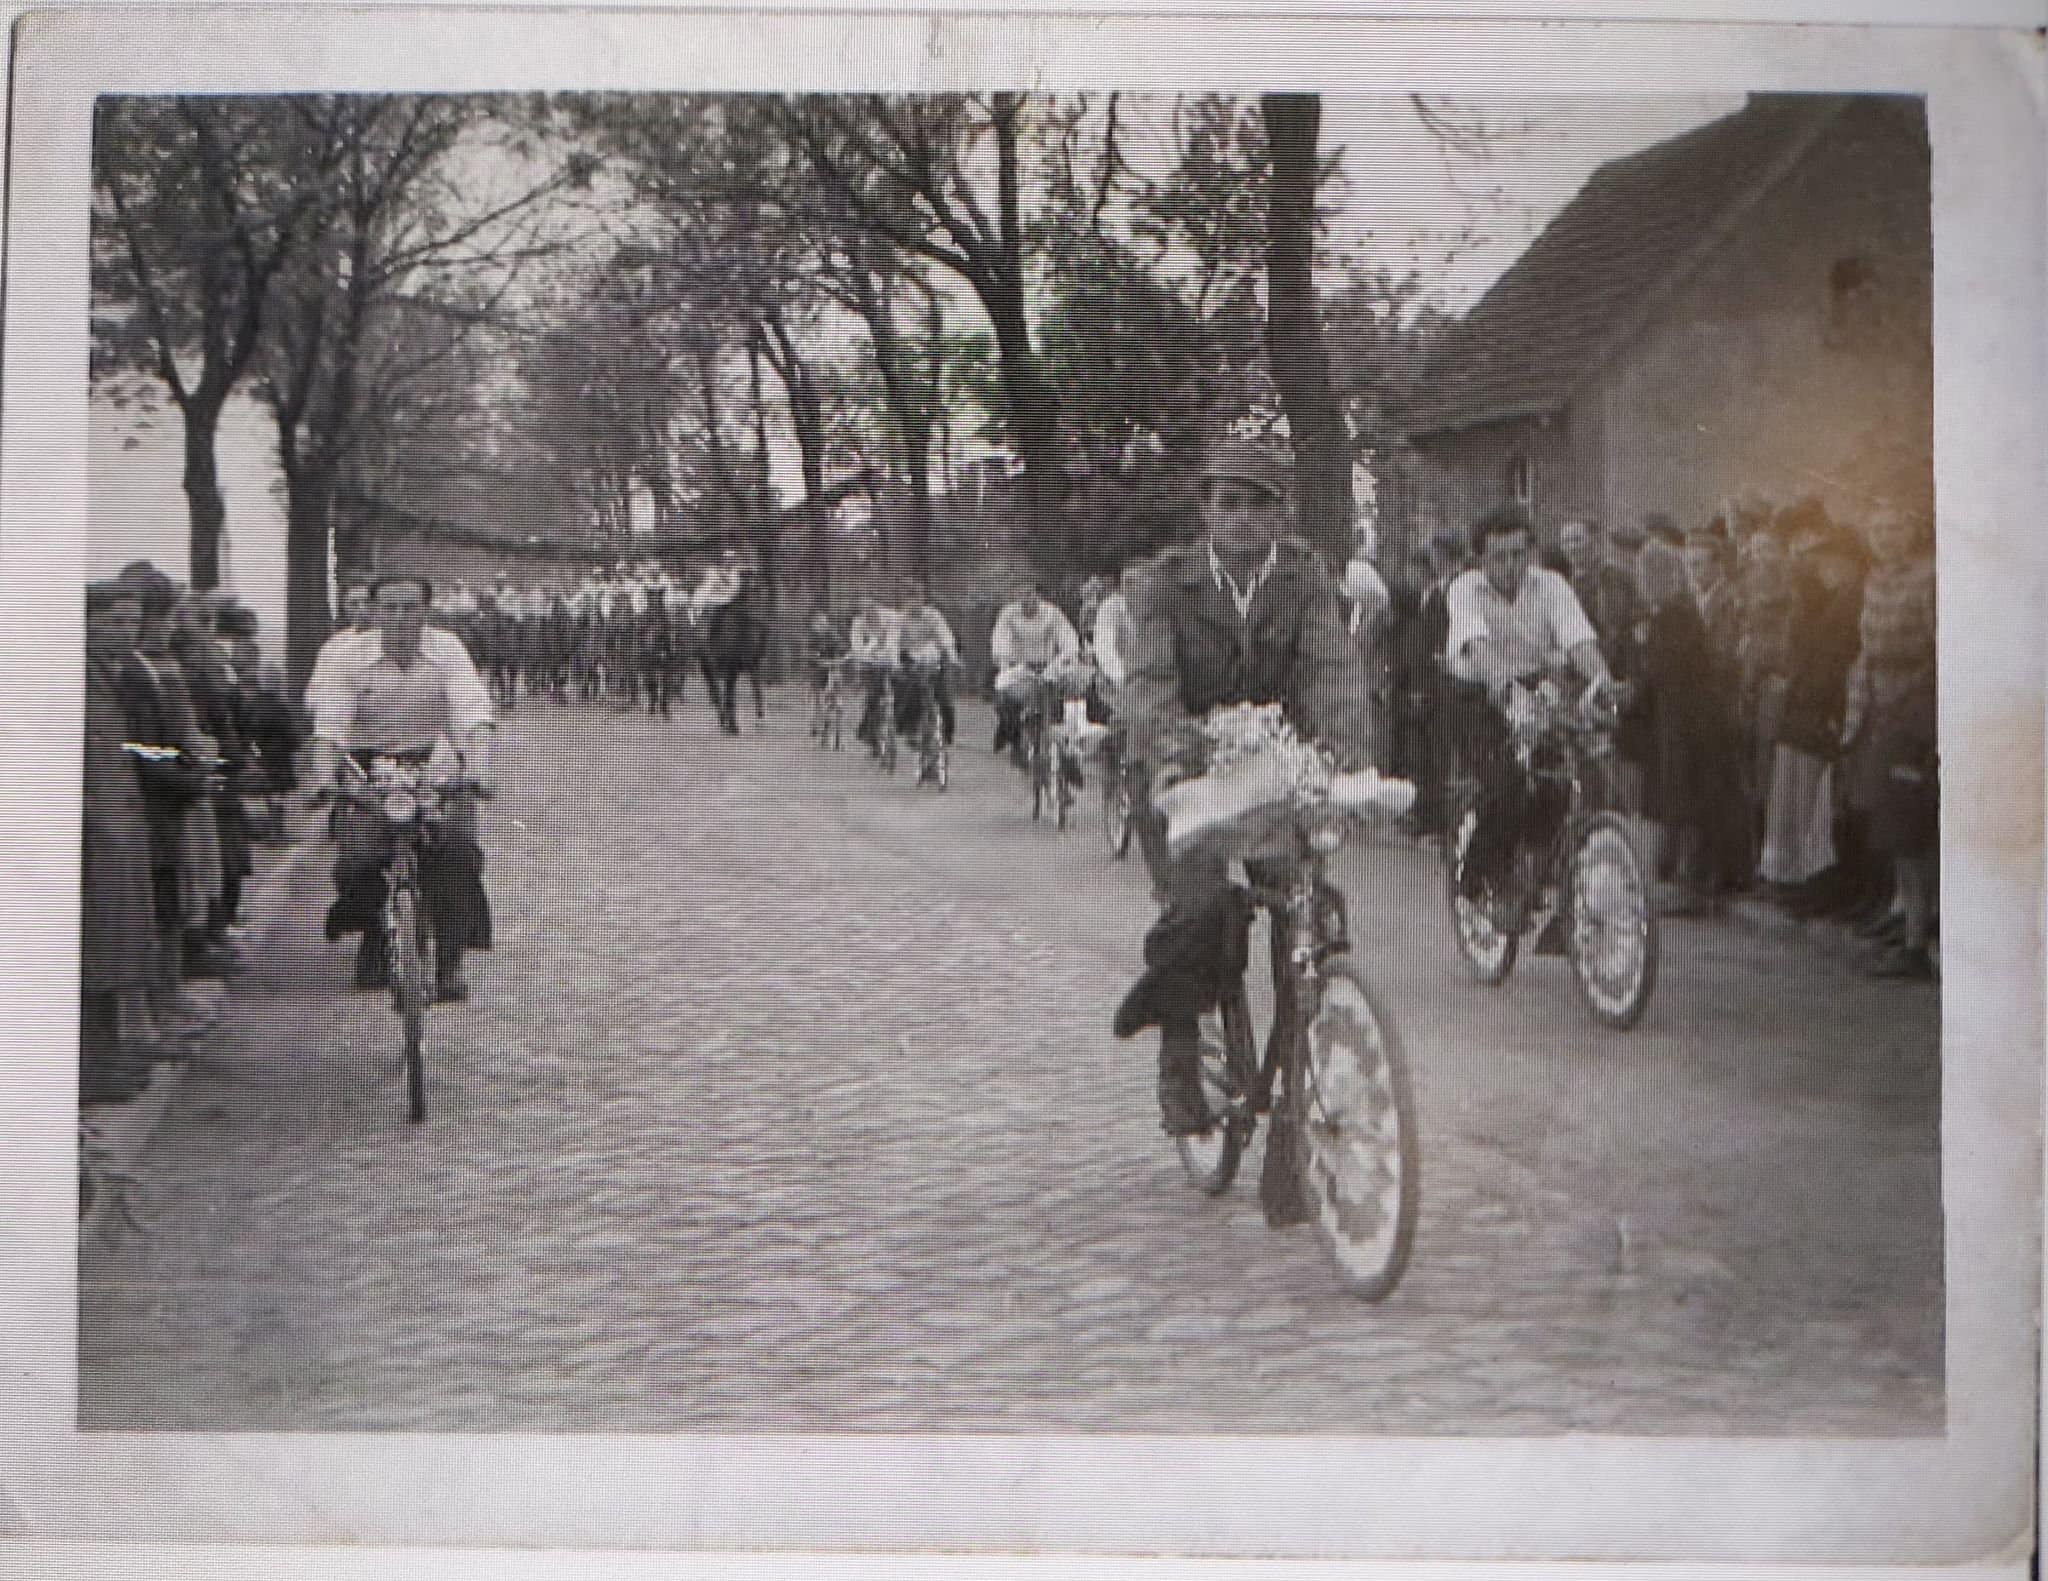 Na zdjęciu widać dawną ulicę Kościuszki z kostki brukowej oraz osoby jadące na rowerach.